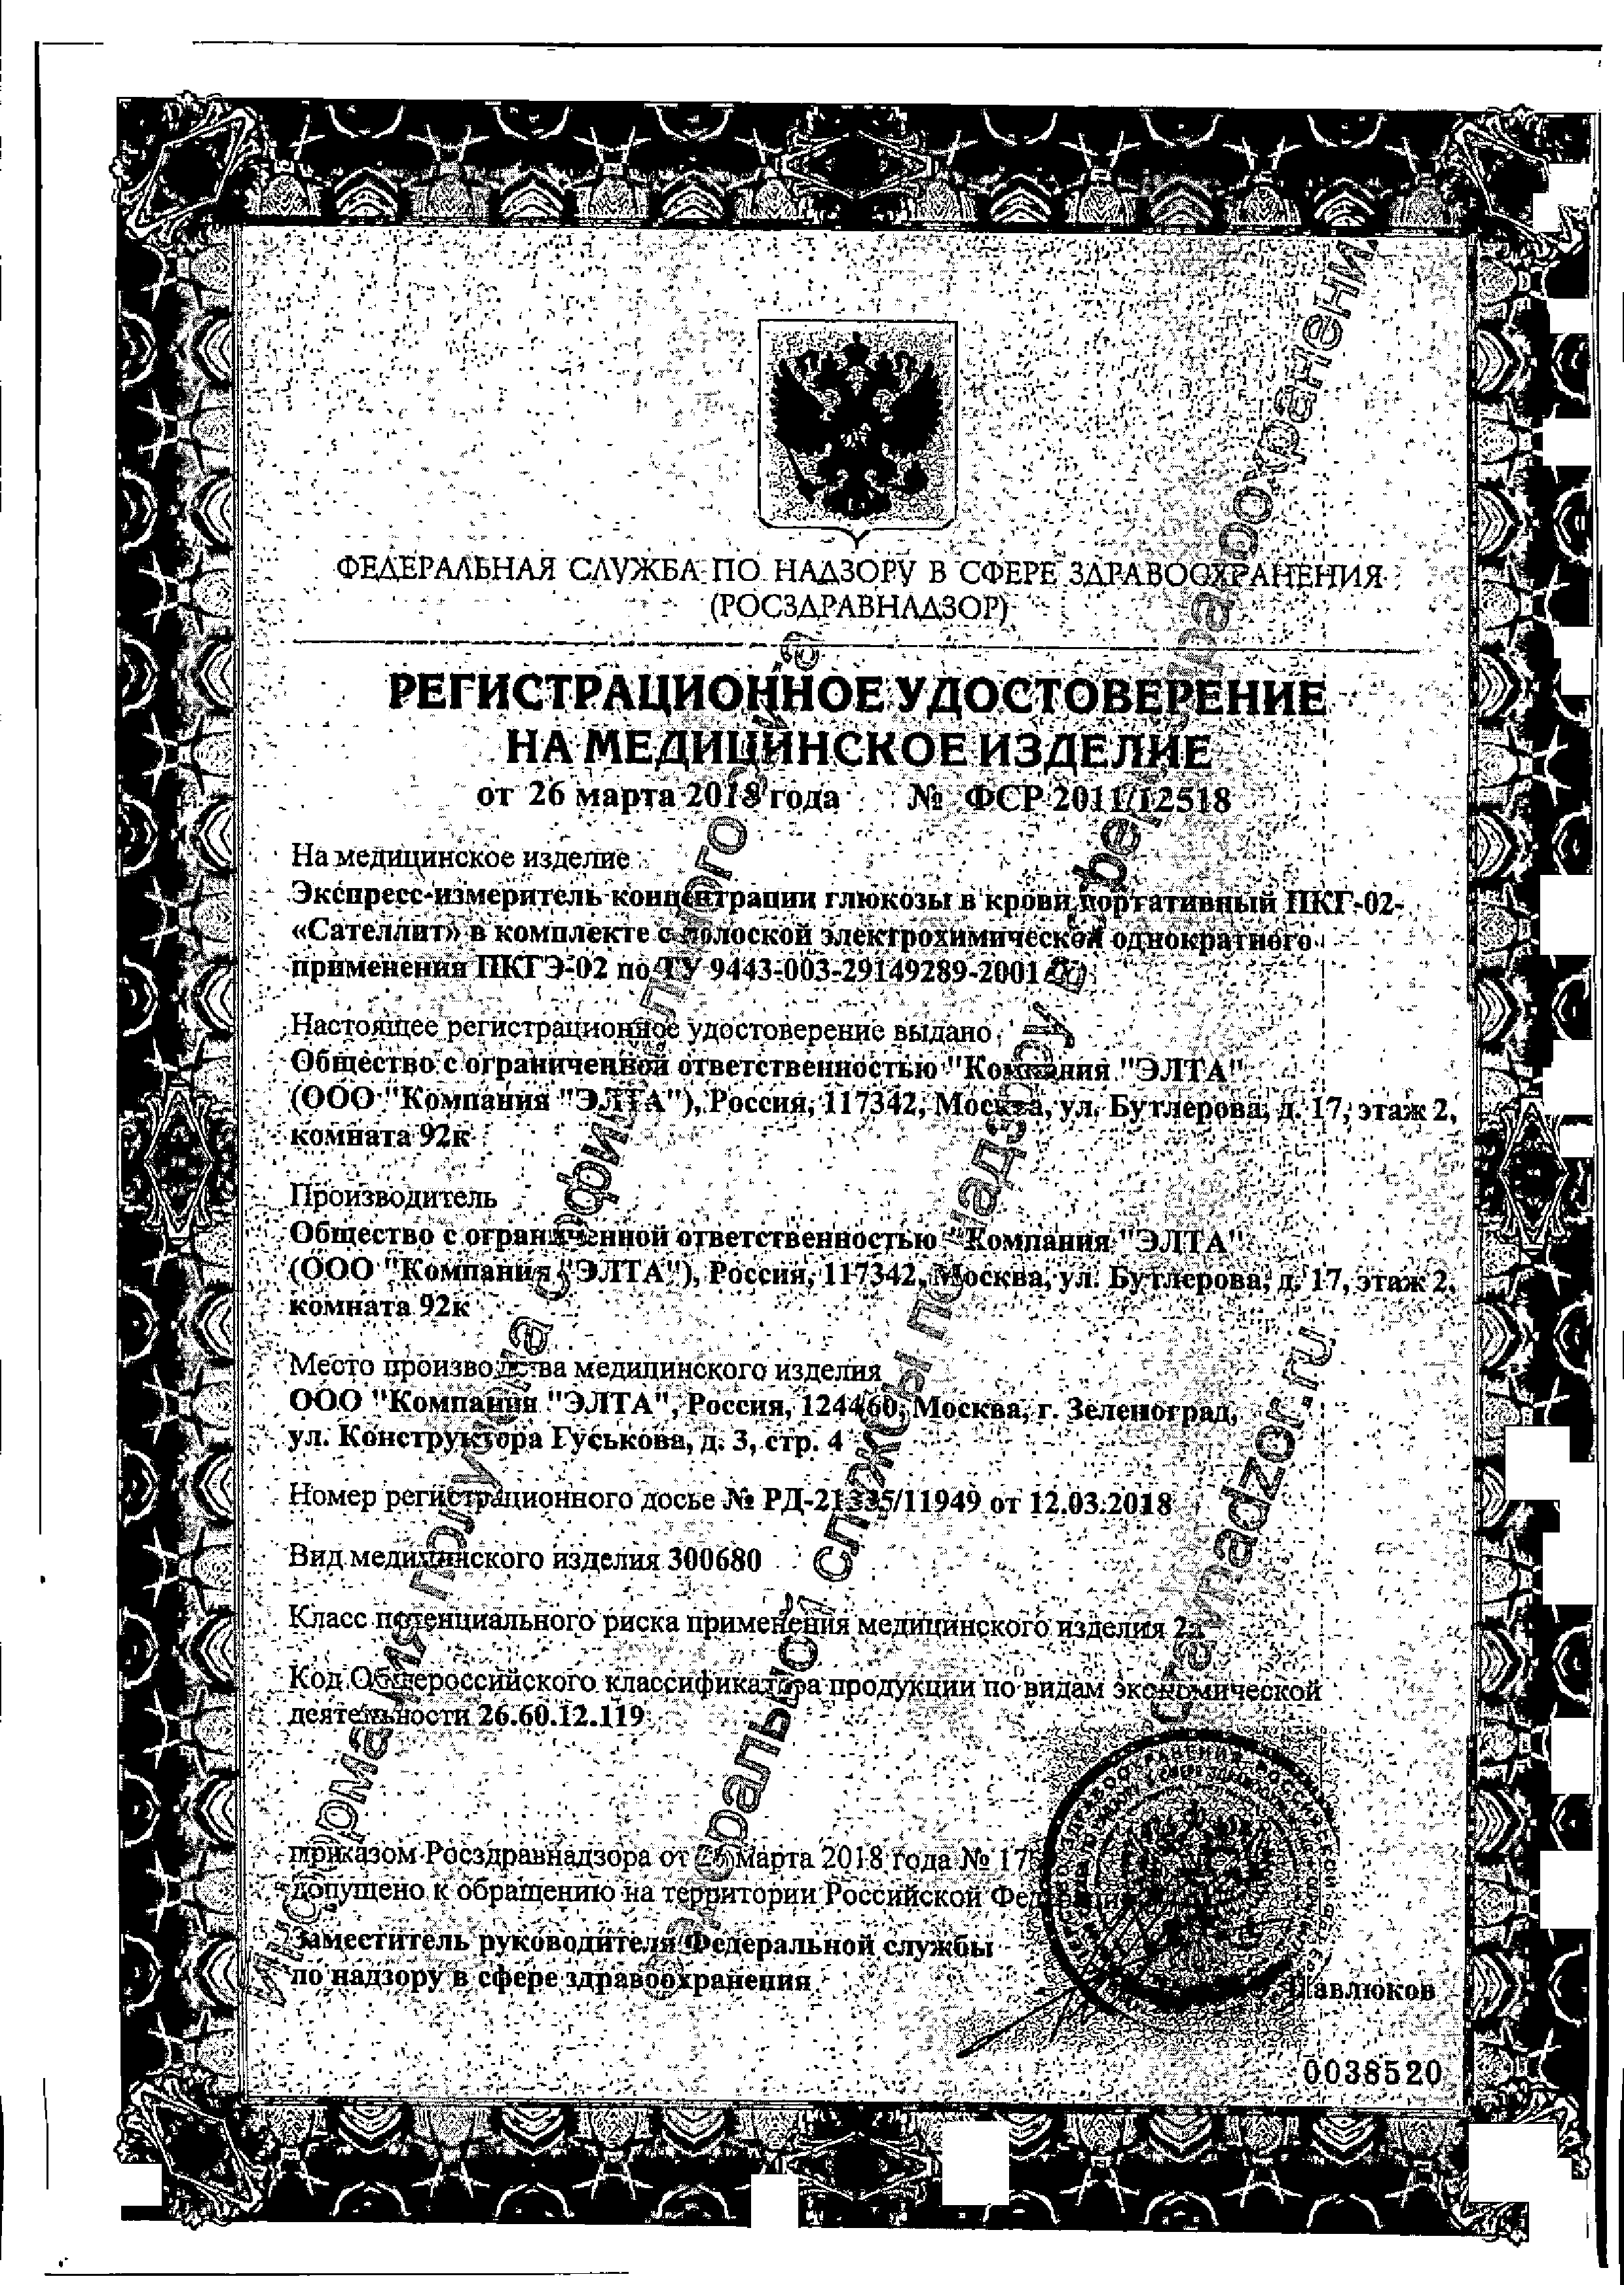 Тест-полоска ПКГЭ-02 Сателлит сертификат